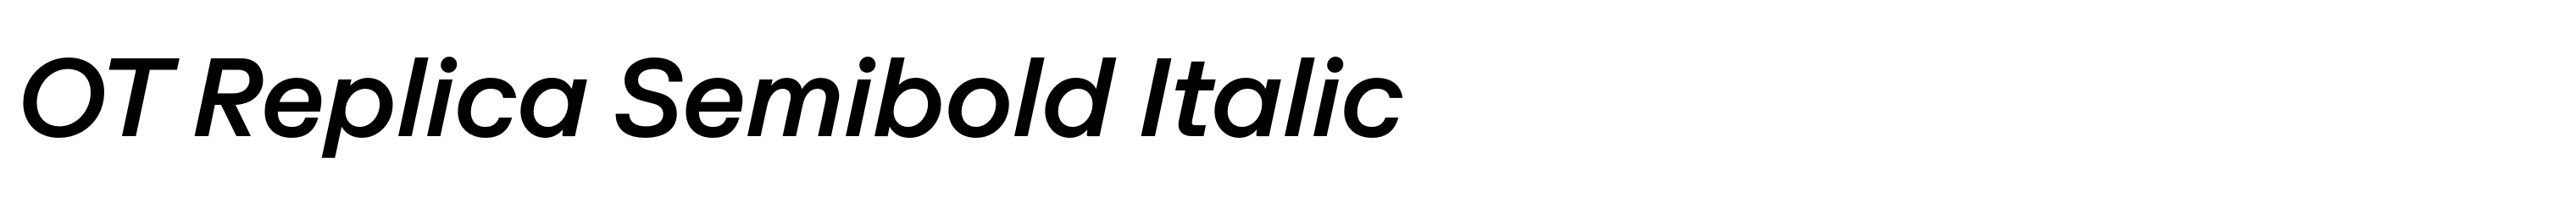 OT Replica Semibold Italic